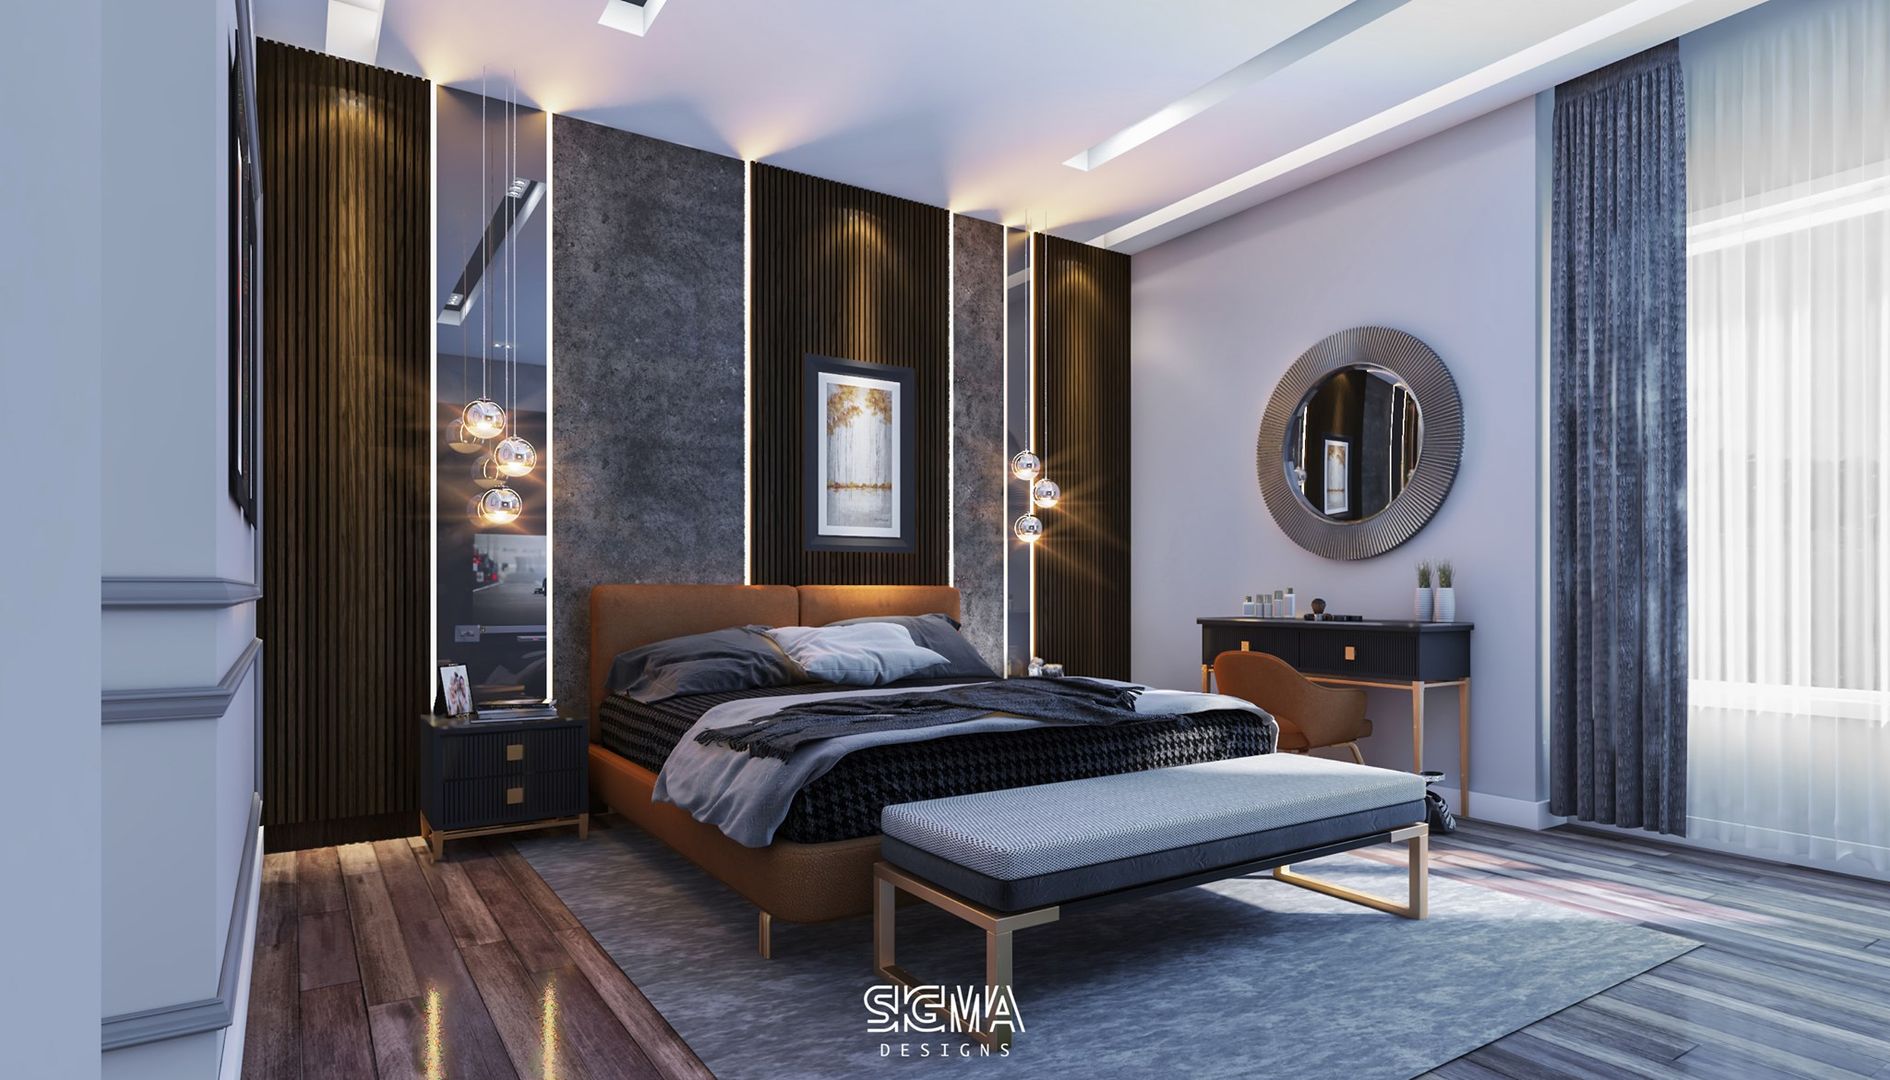 شقة سكنية خاصة - القاهرة الجديدة, SIGMA Designs SIGMA Designs 모던스타일 침실